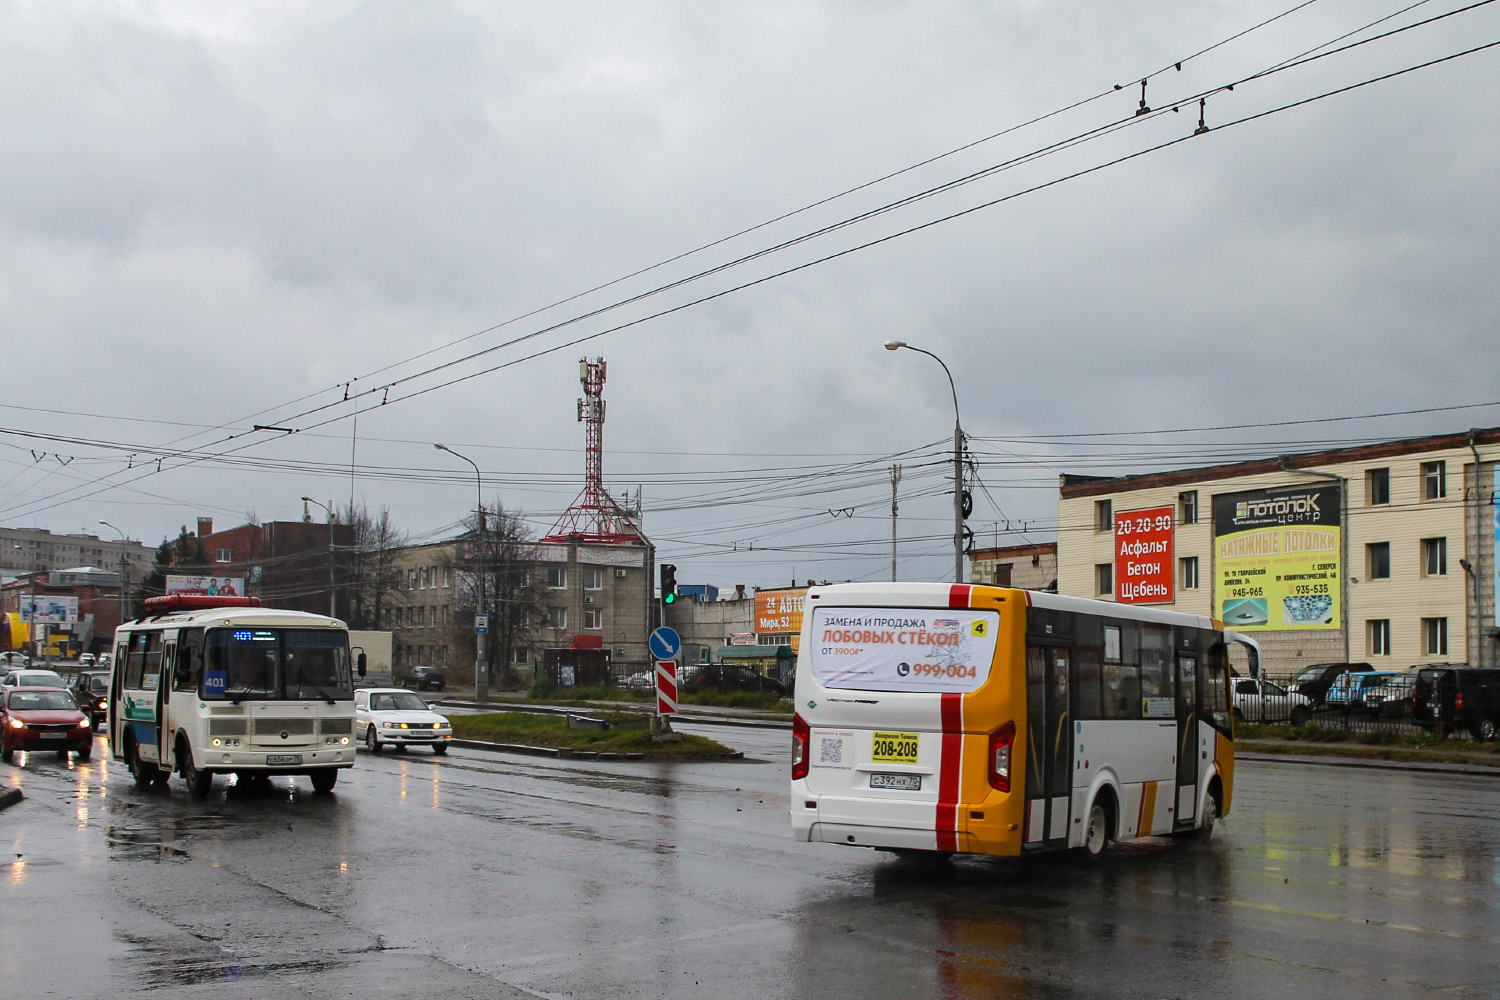 Tomsk region, PAZ-32054 # С 656 ОР 70; Tomsk region, PAZ-320435-04 "Vector Next" # С 392 НХ 70